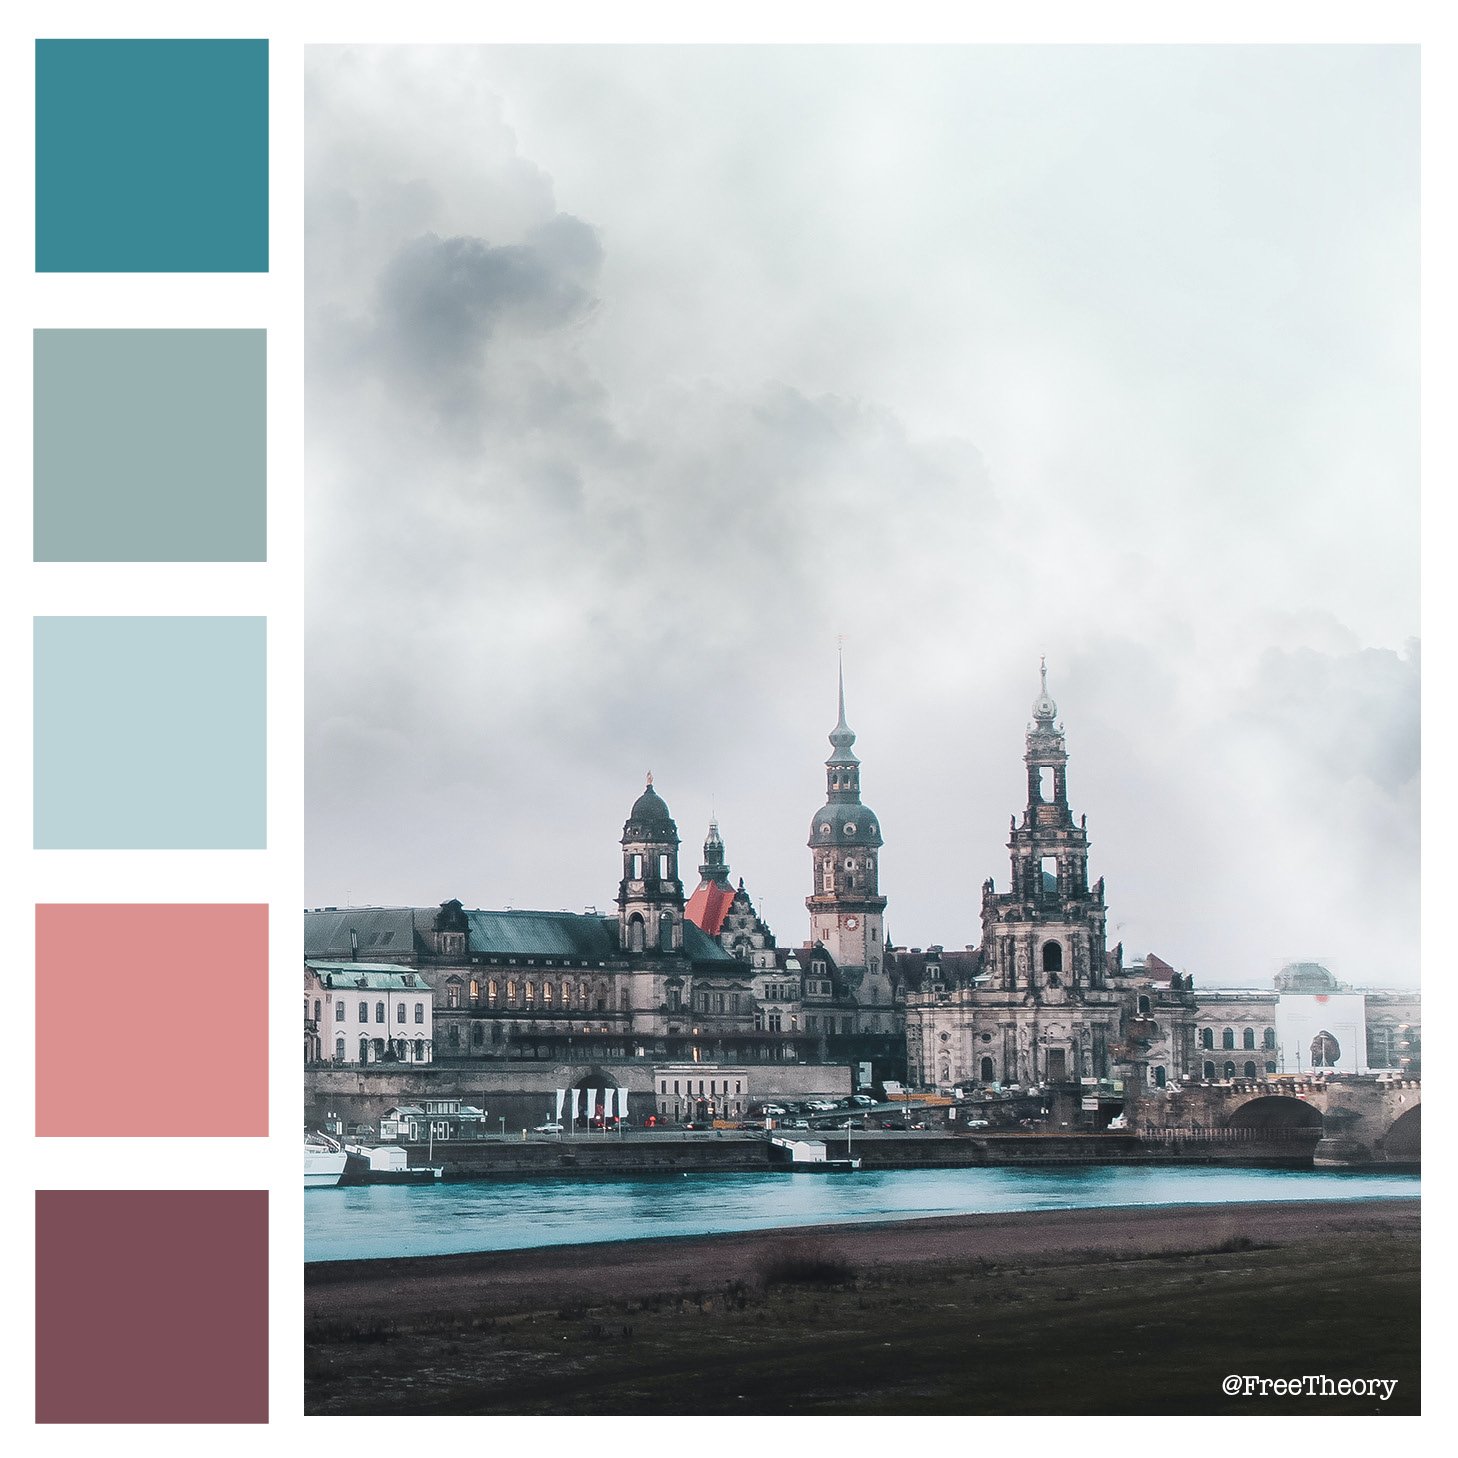 corel color palette download